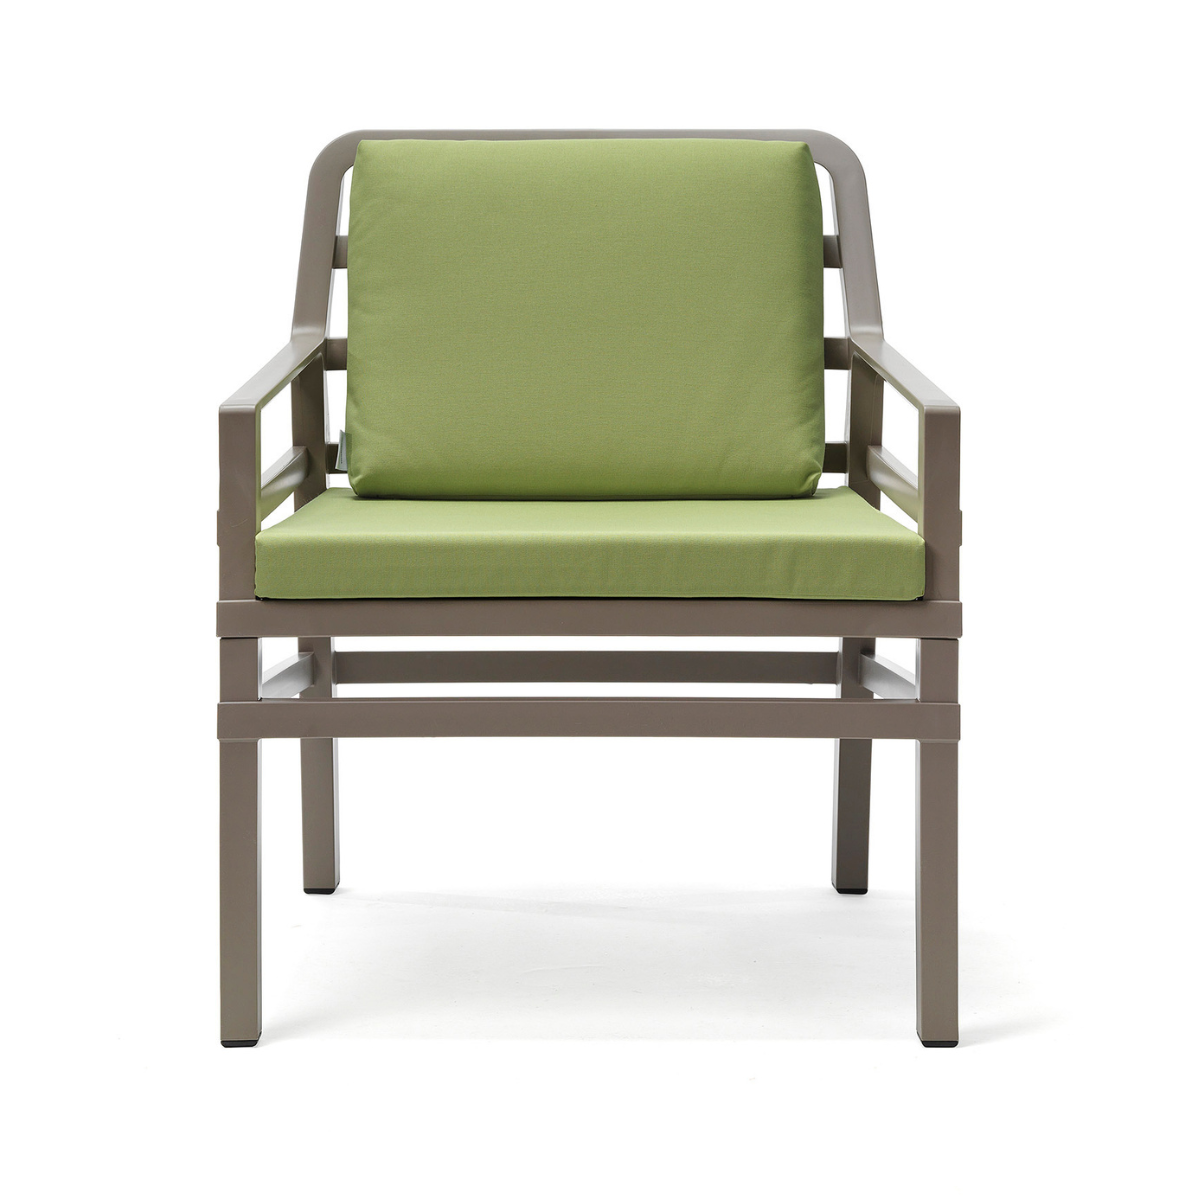 NARDI ARIA POLTRONA Taupe, Zöld design Kültéri fotel